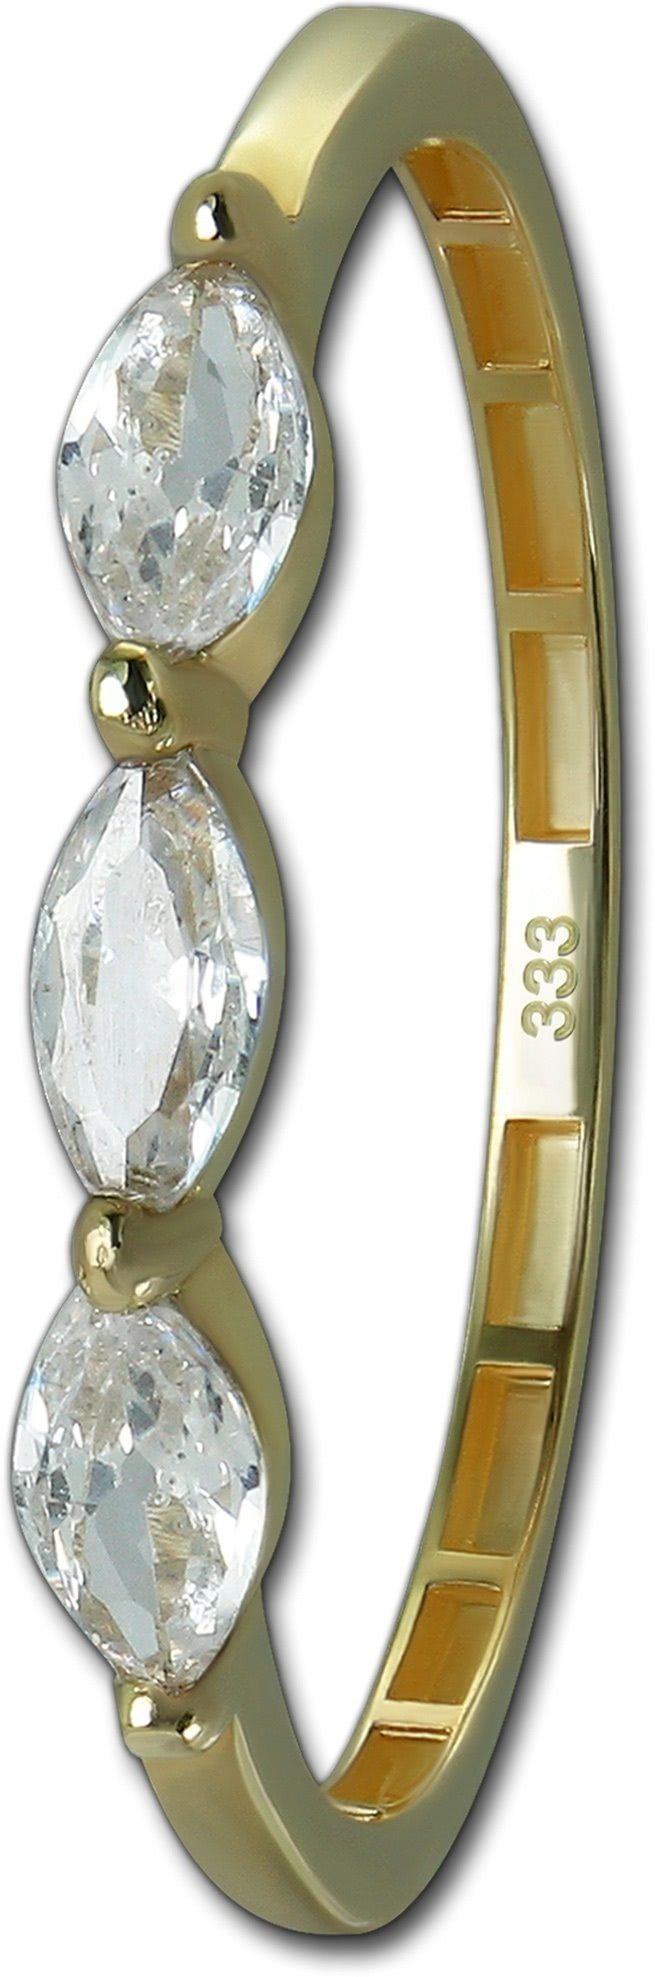 GoldDream Goldring GoldDream Gold Ring Shine Gr.60 (Fingerring), Damen Ring Echtgold, 333er Gelbgold gold, weiß Shine | Goldringe